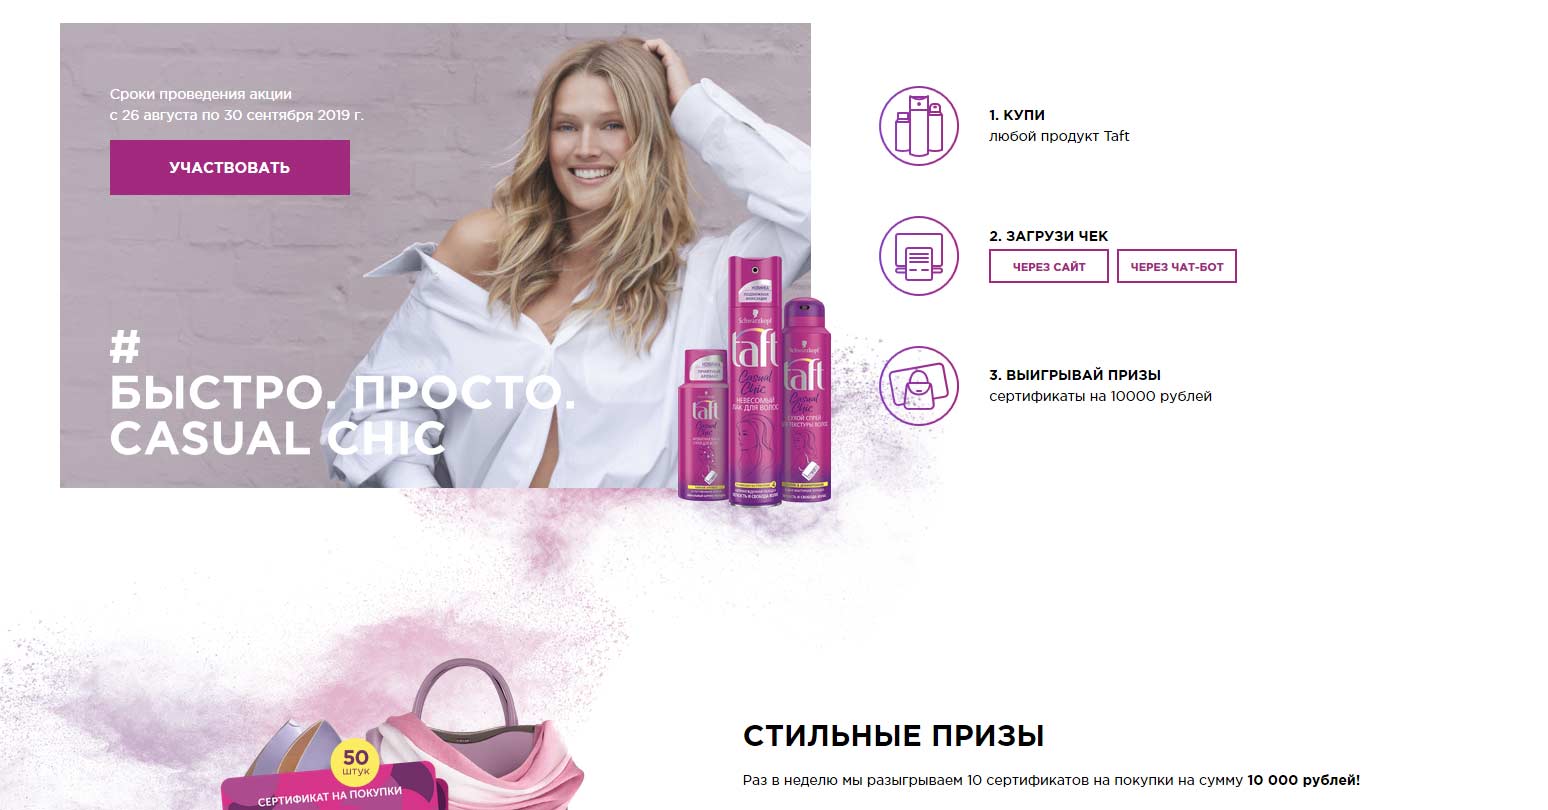 promo.taft.ru регистрация